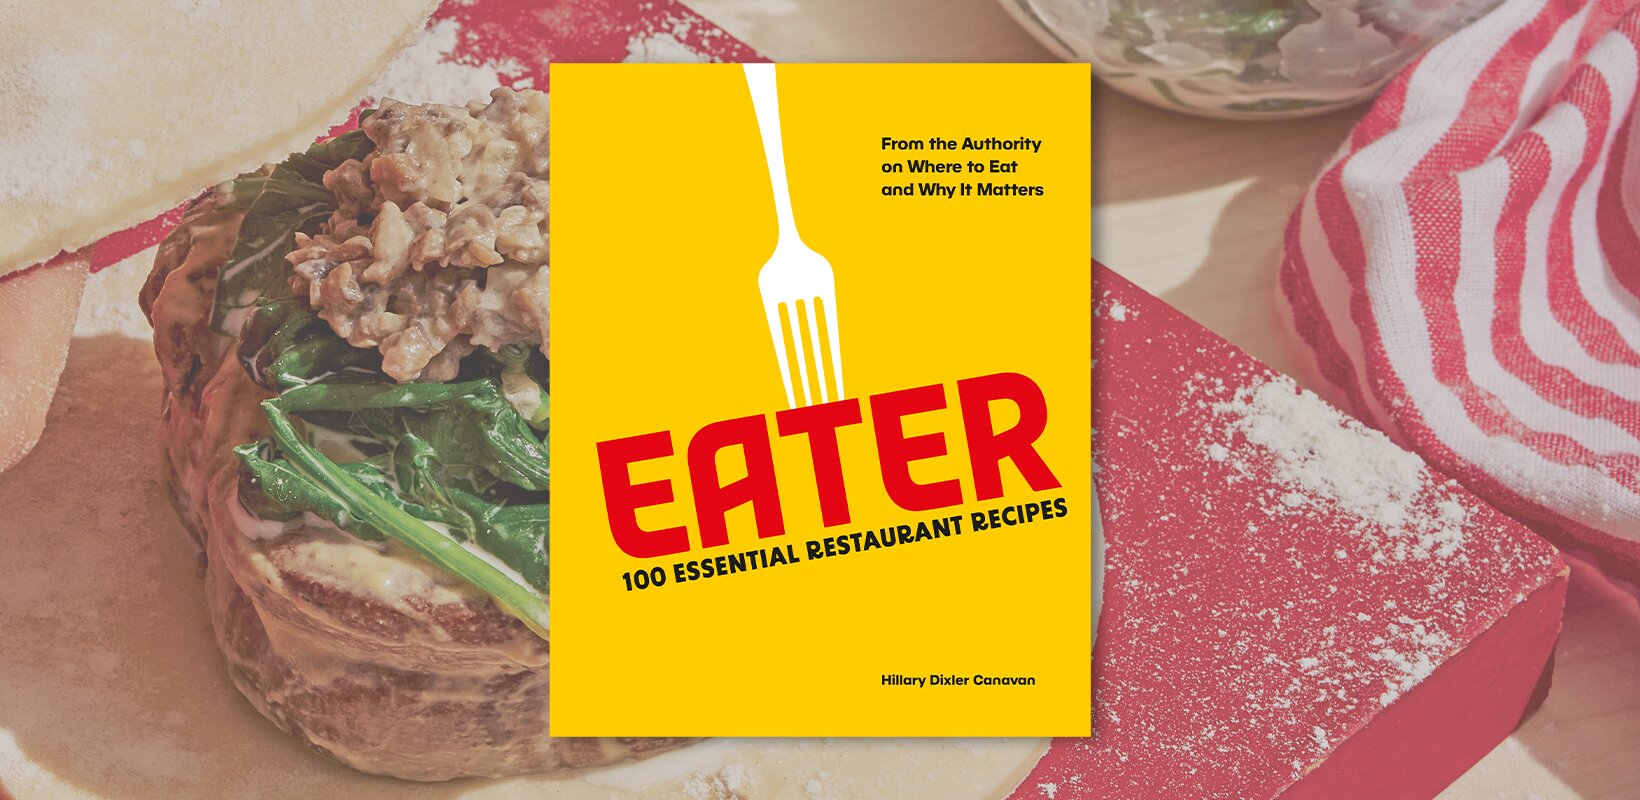 Book review: Eater: 100 Essential Restaurant Recipes 